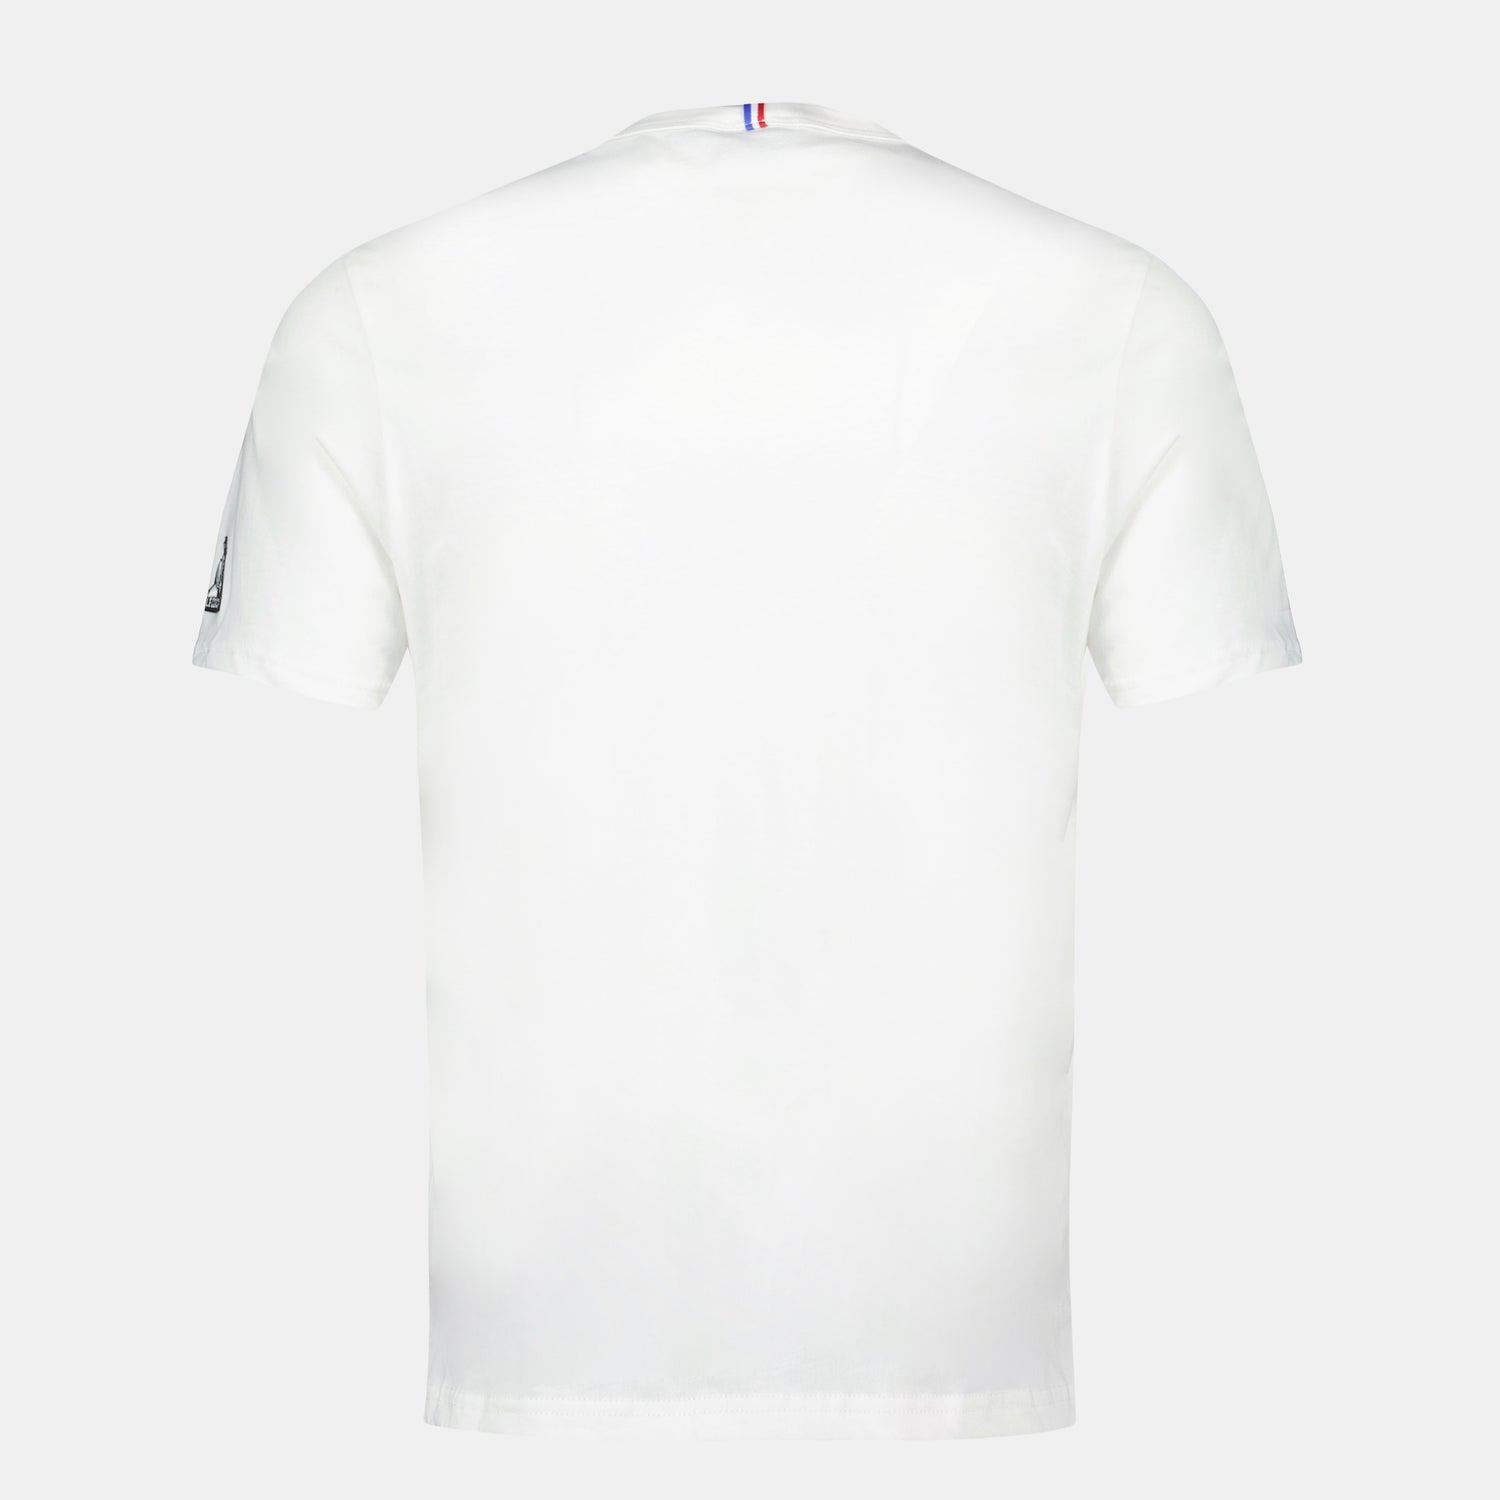 2410193-SAISON 2 Tee SS N°1 M new optical white  | Camiseta Hombre